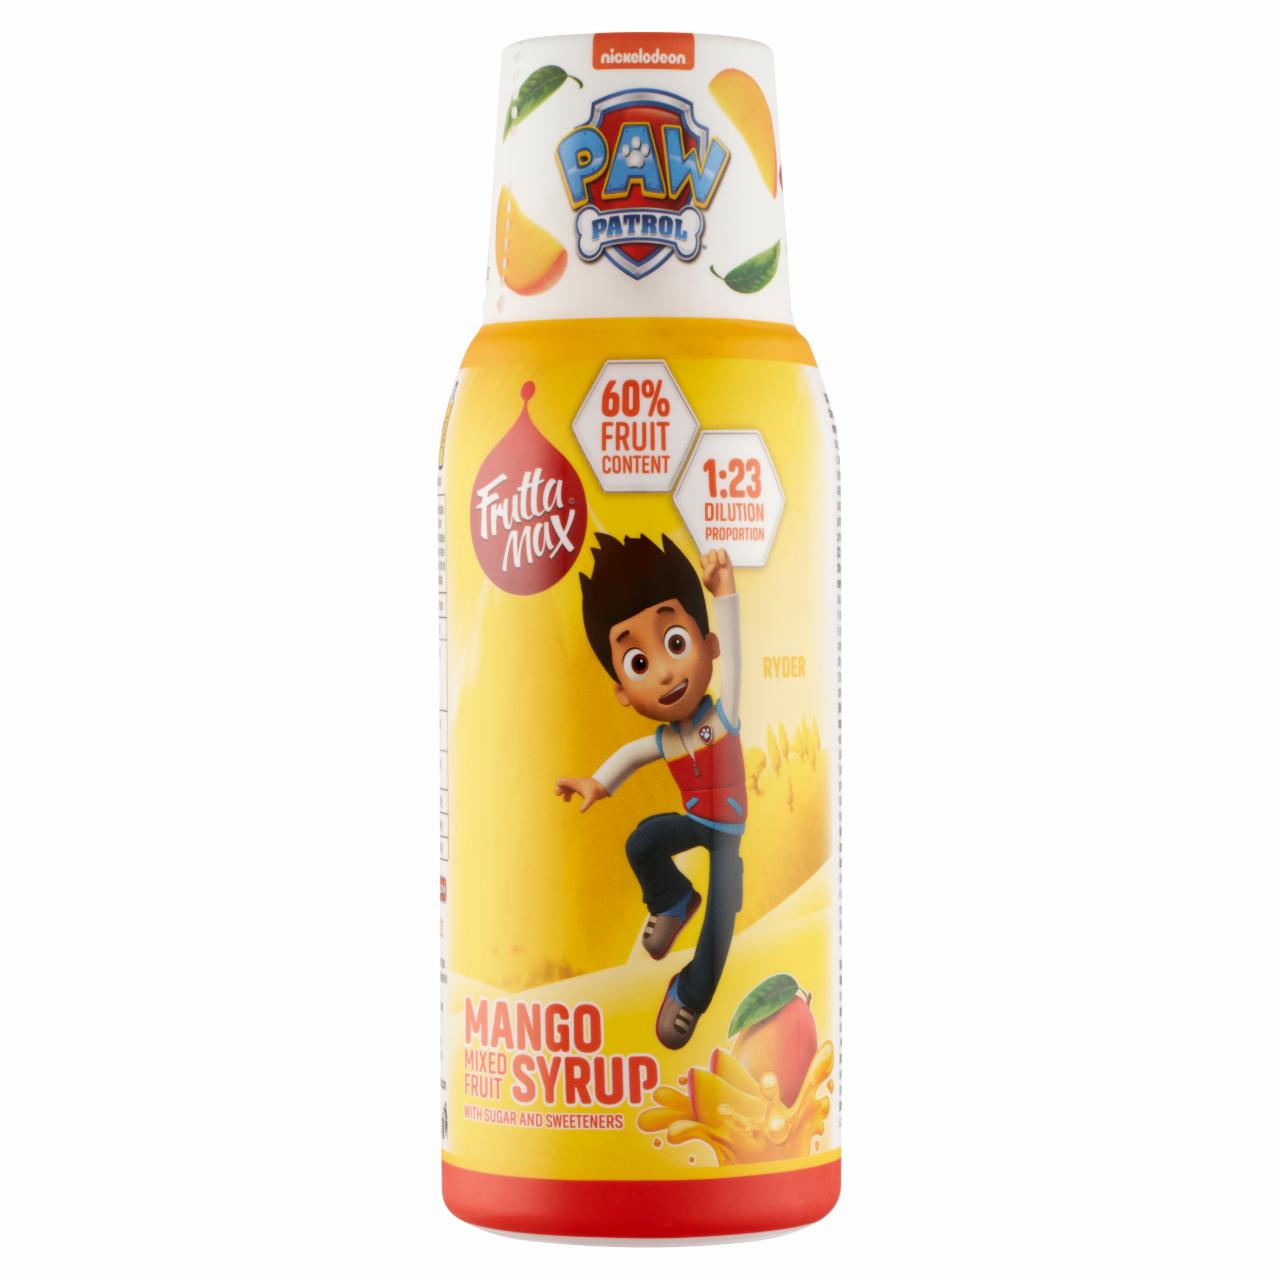 Képek - FruttaMax Paw Patrol mangó vegyes gyümölcsszörp izocukorral és édesítőszerekkel 500 ml